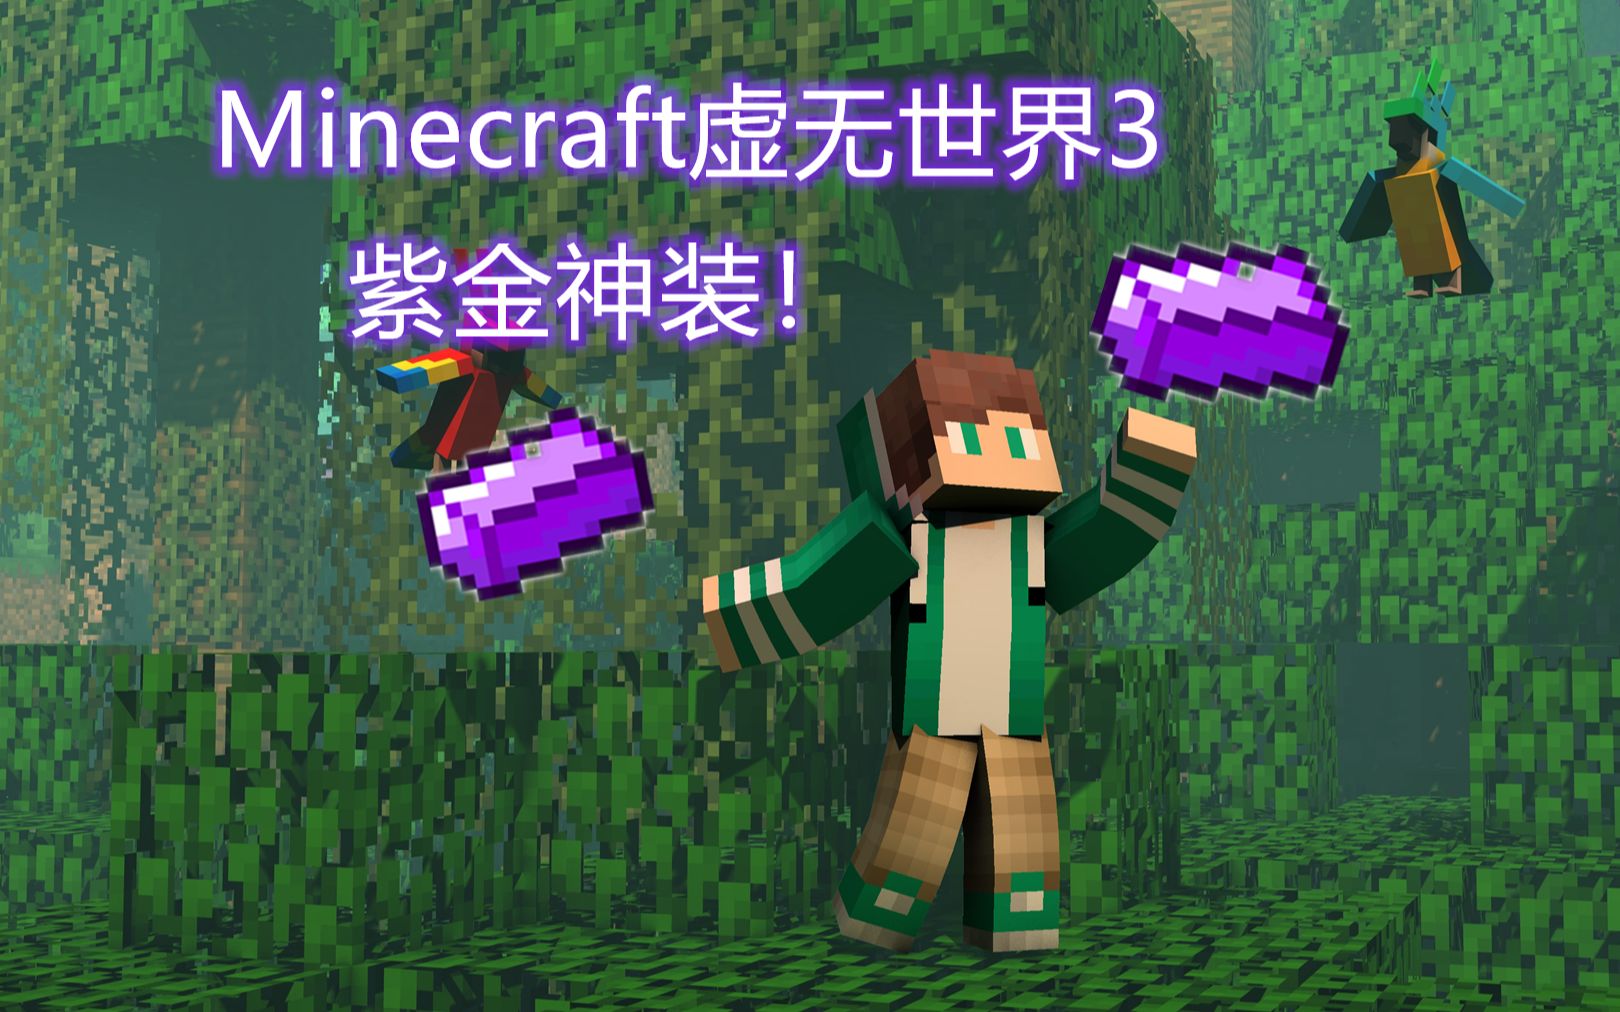 悠痕 Minecraft虚无世界3 第六期 萌新套装紫晶盔甲 哔哩哔哩 つロ干杯 Bilibili